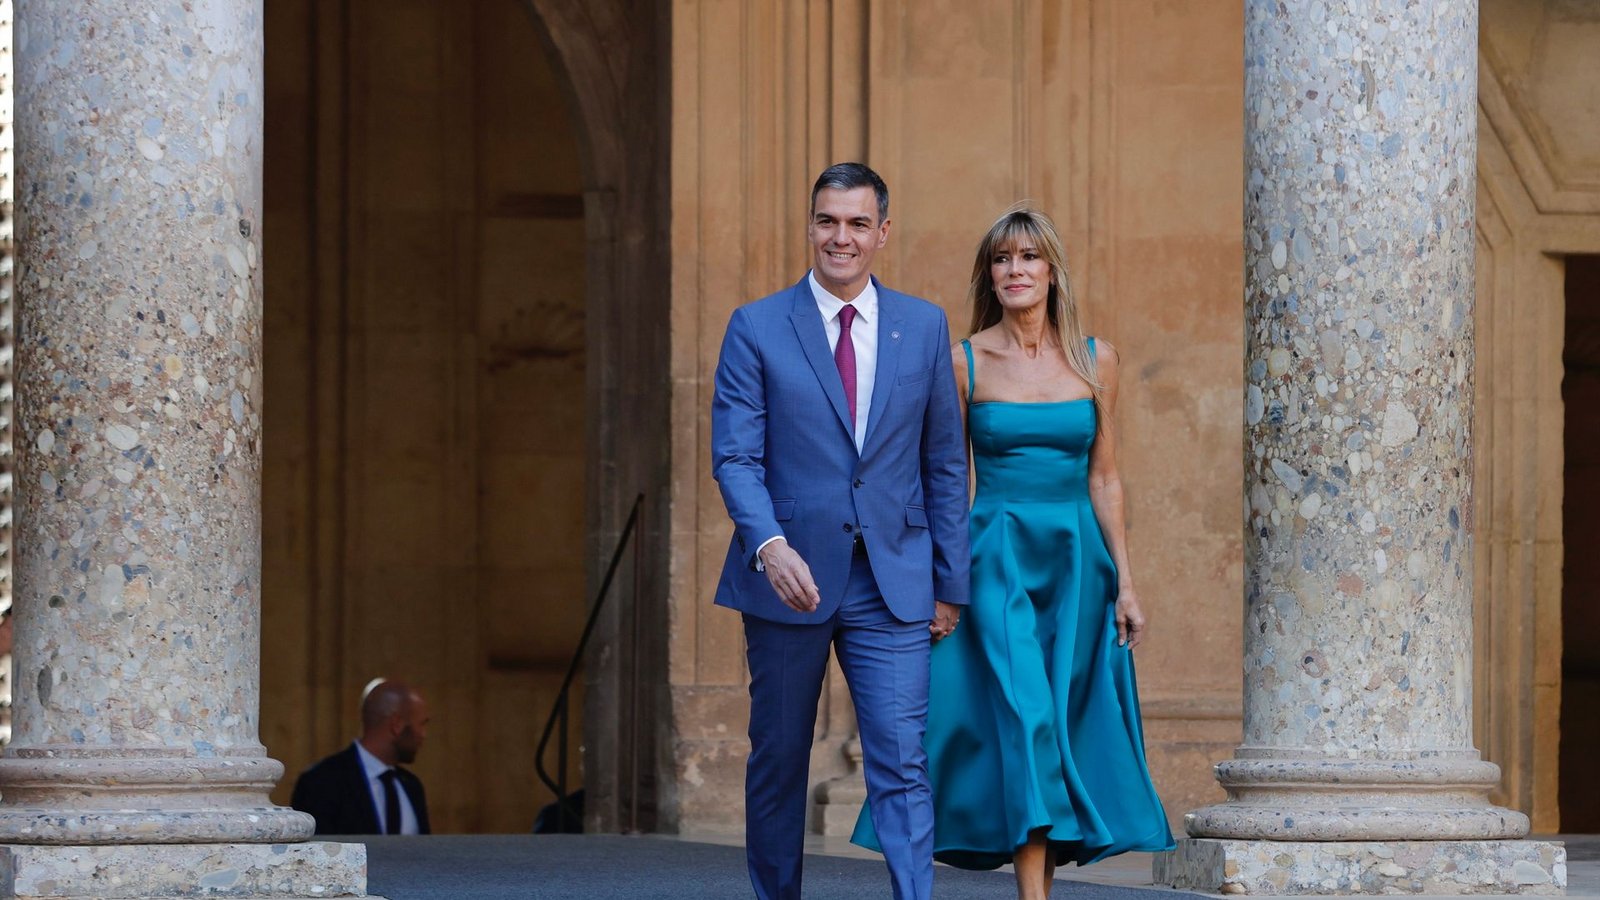 Pedro Sánchez und Begoña Gómez sind seit 2006 miteinander verheiratet.Foto: Álex Cámara/EUROPA PRESS/dpa